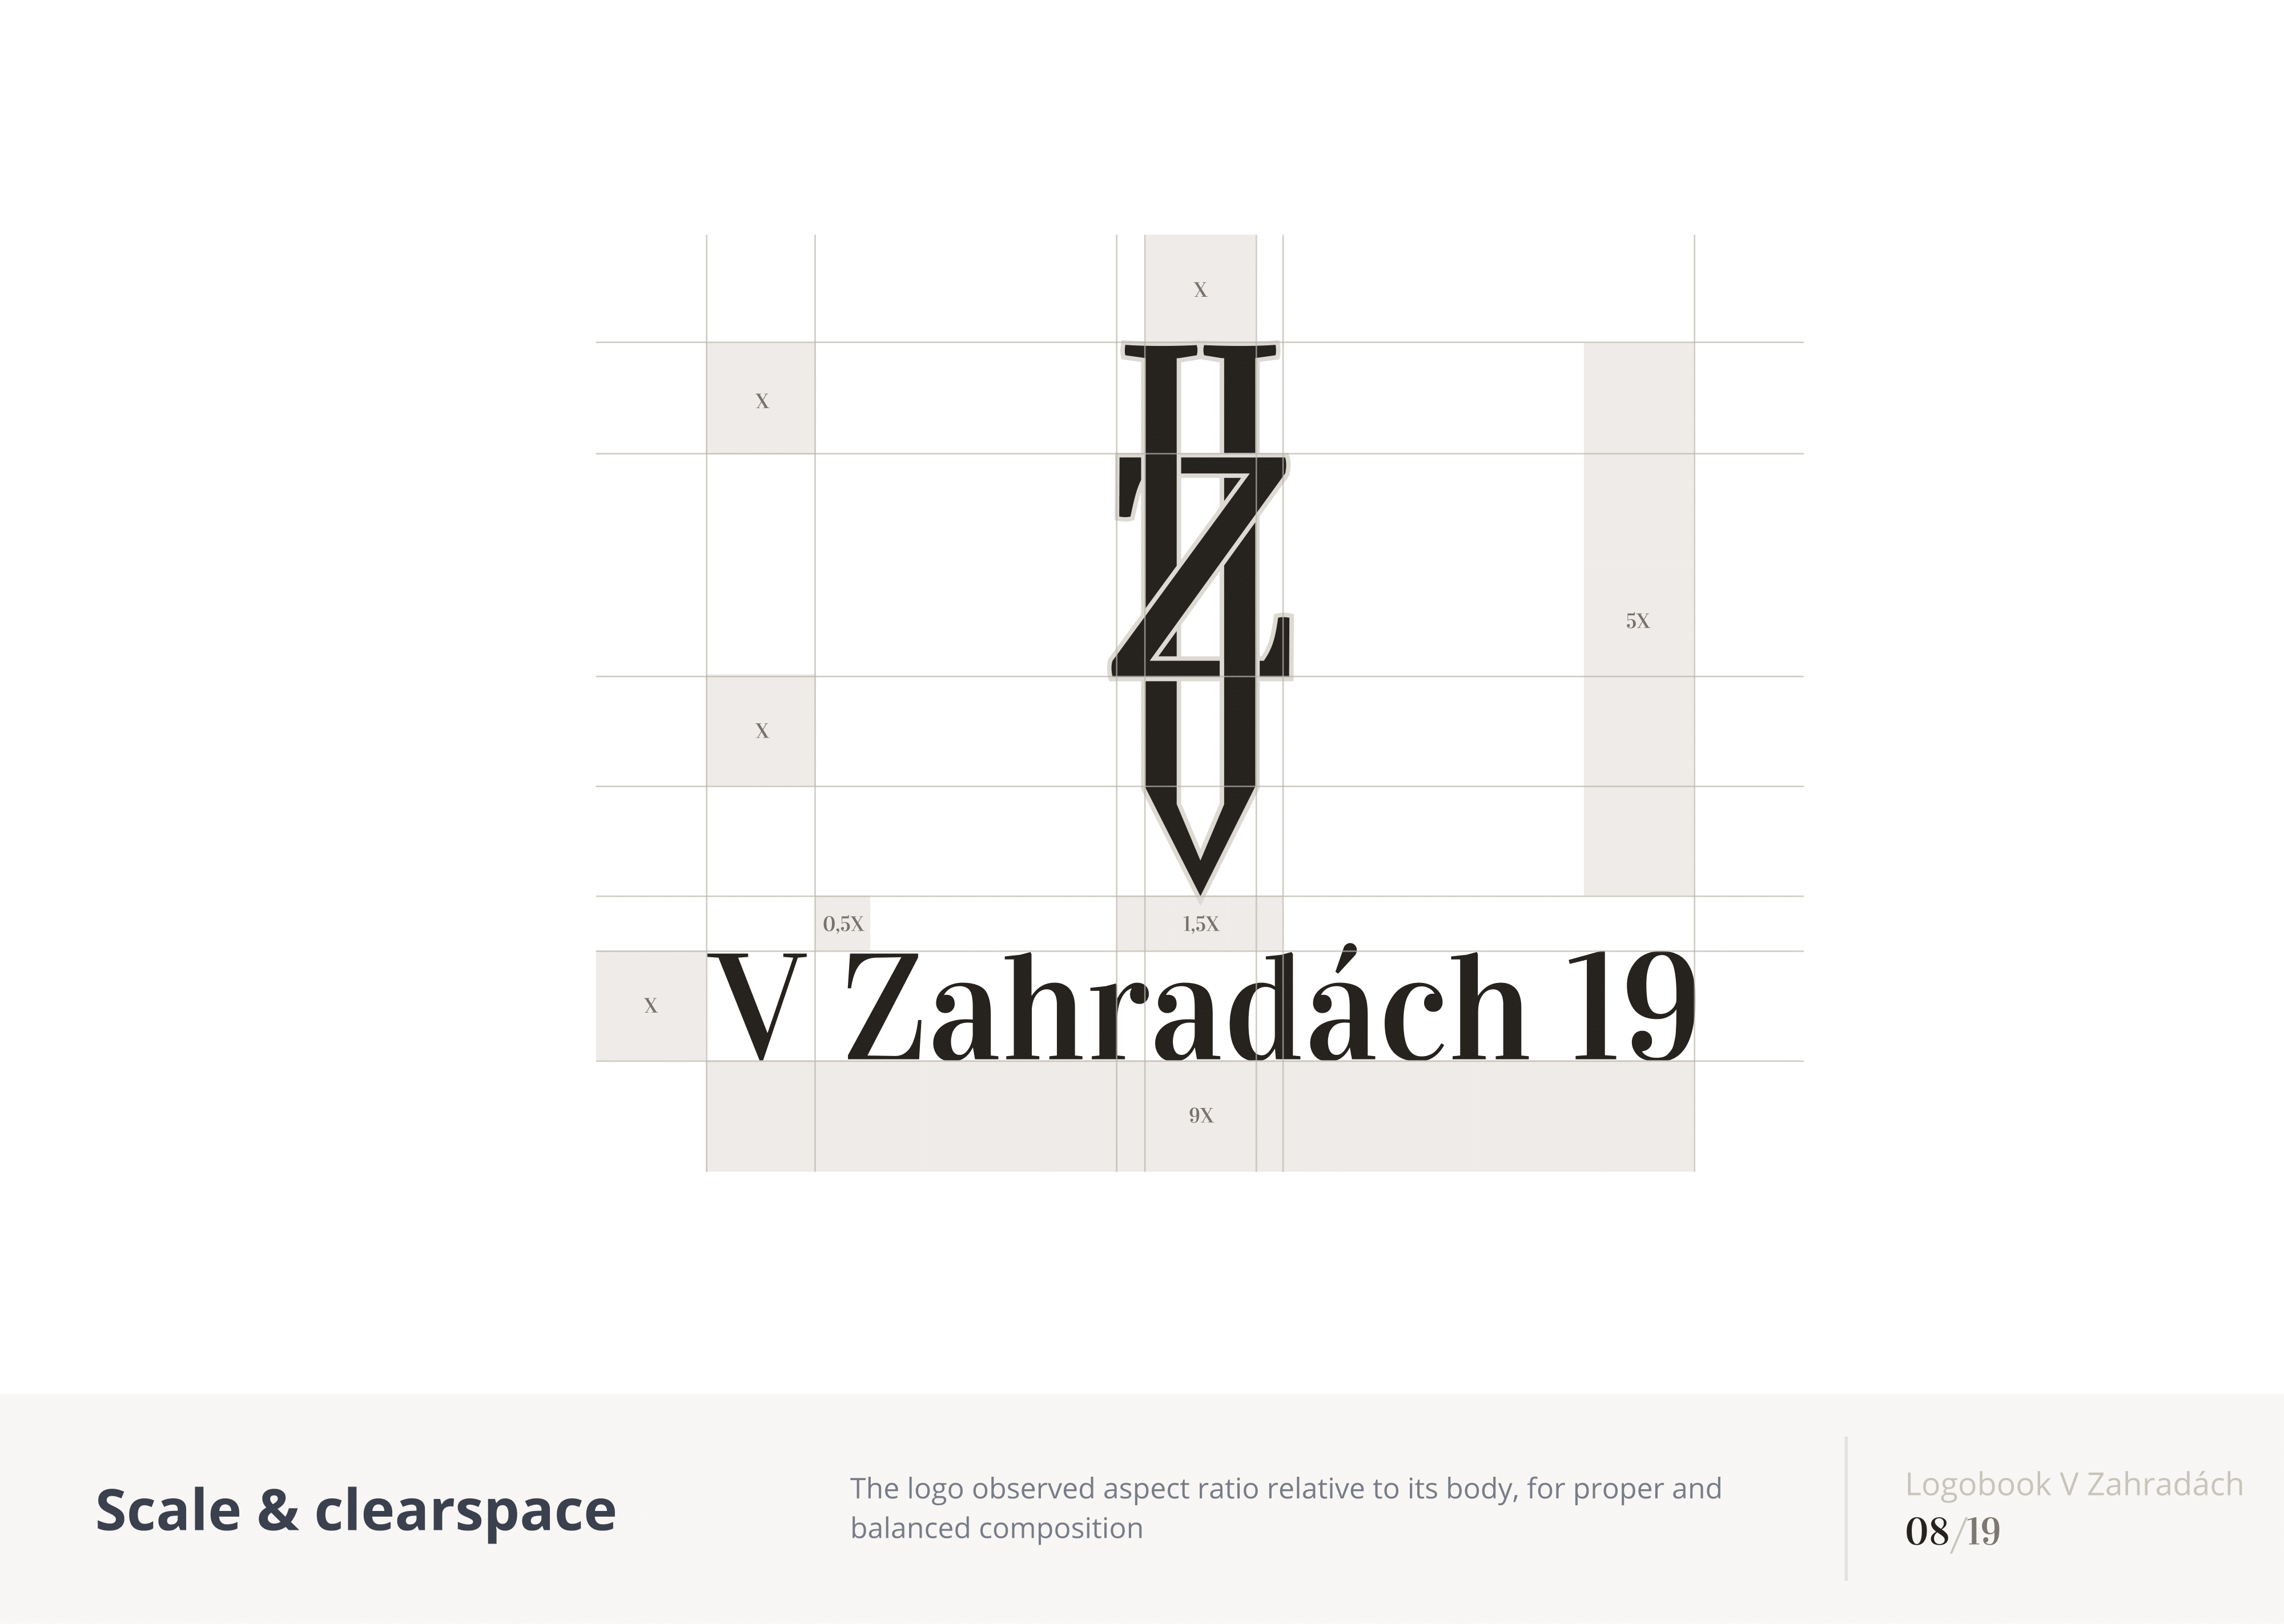 V_Zahradach_19_(Logobook)_2021-08